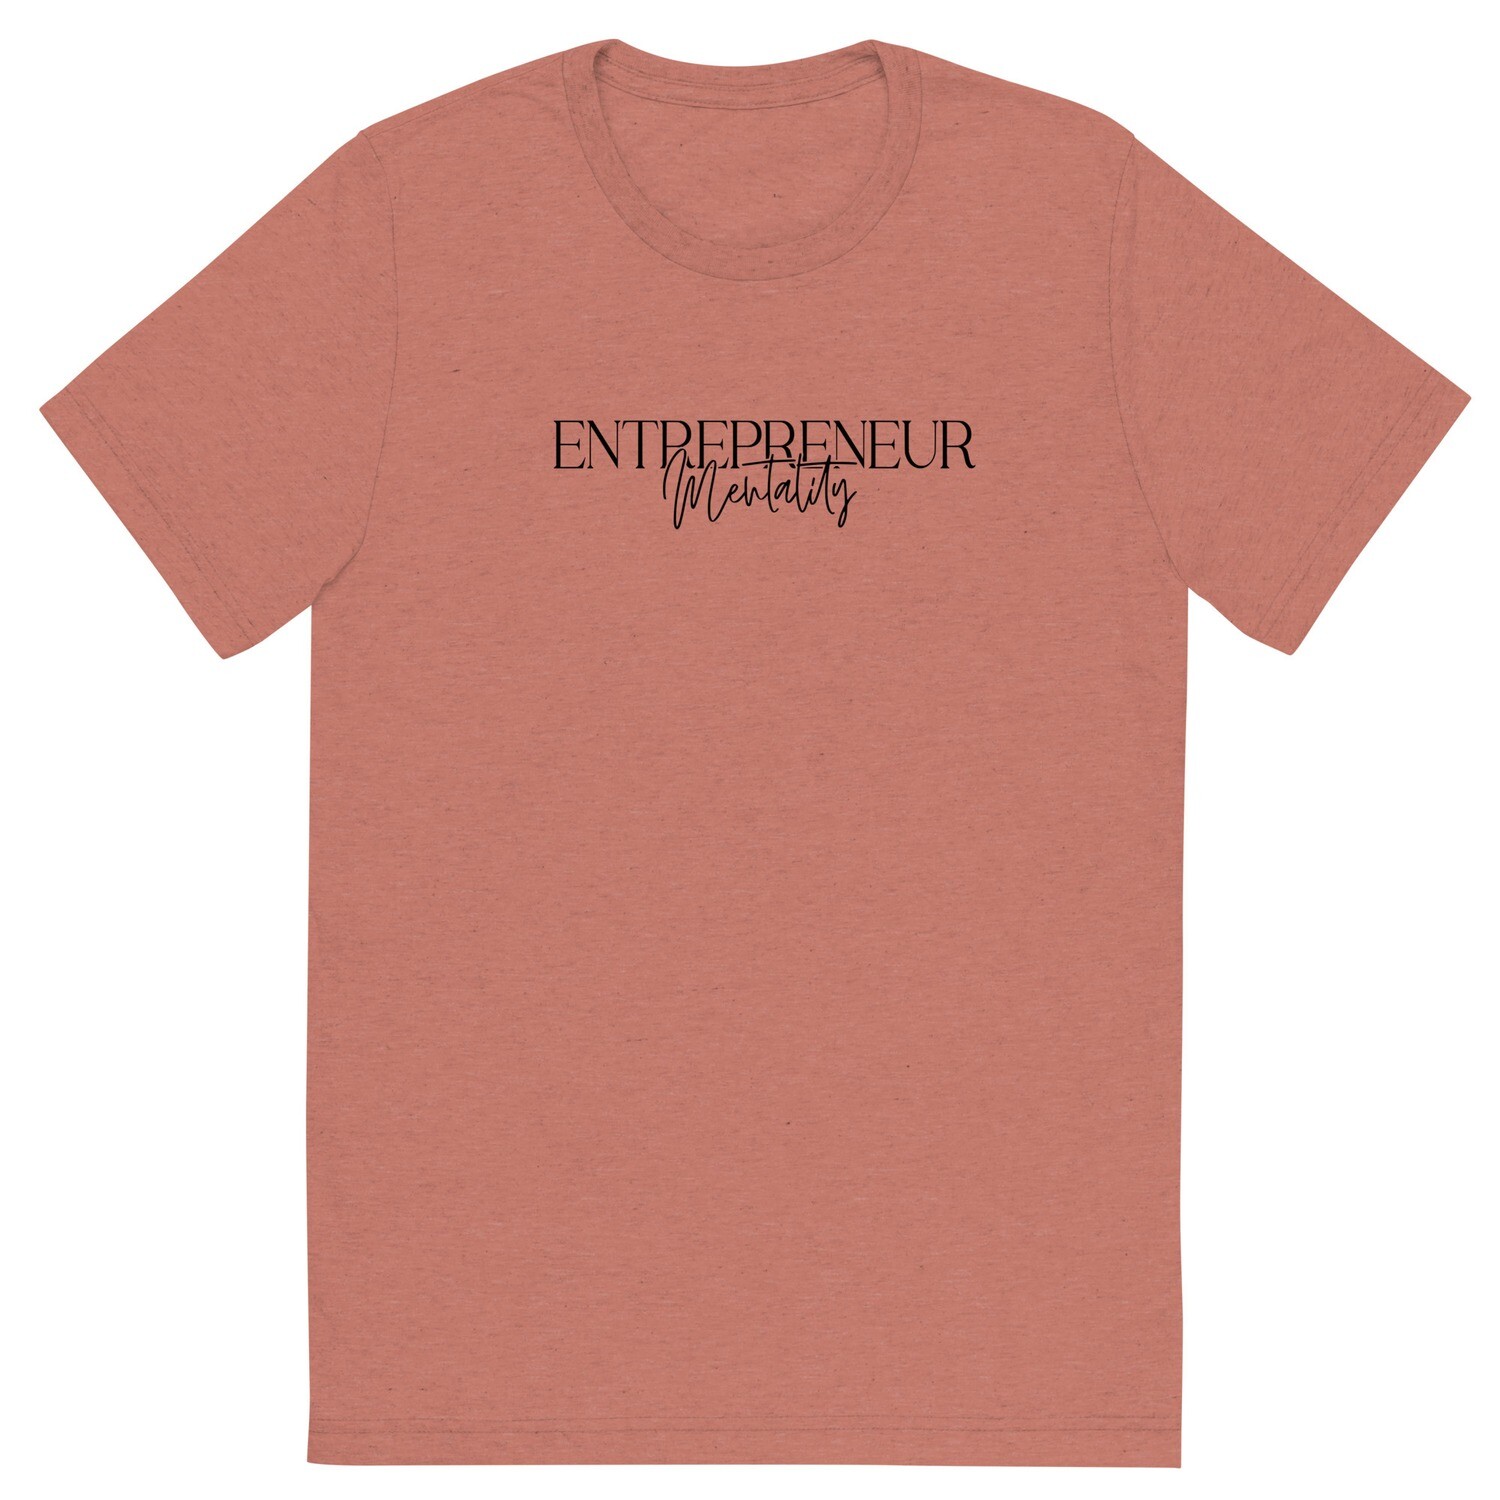 Entrepreneur Mentality T-Shirt